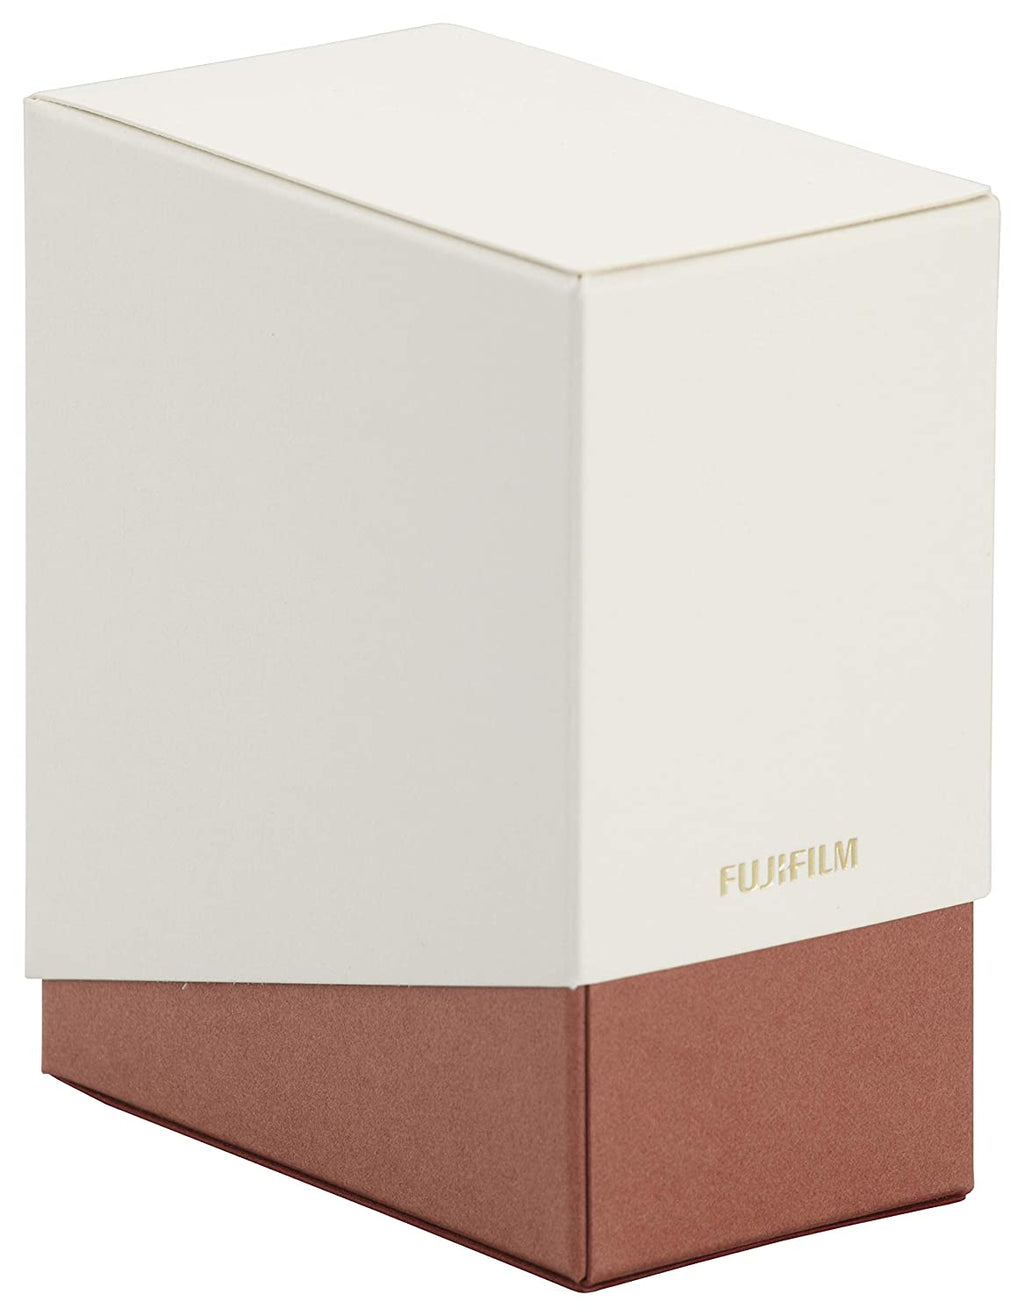 Open Box, Unused Fujifilm Instax Square Film Paper Box (White)